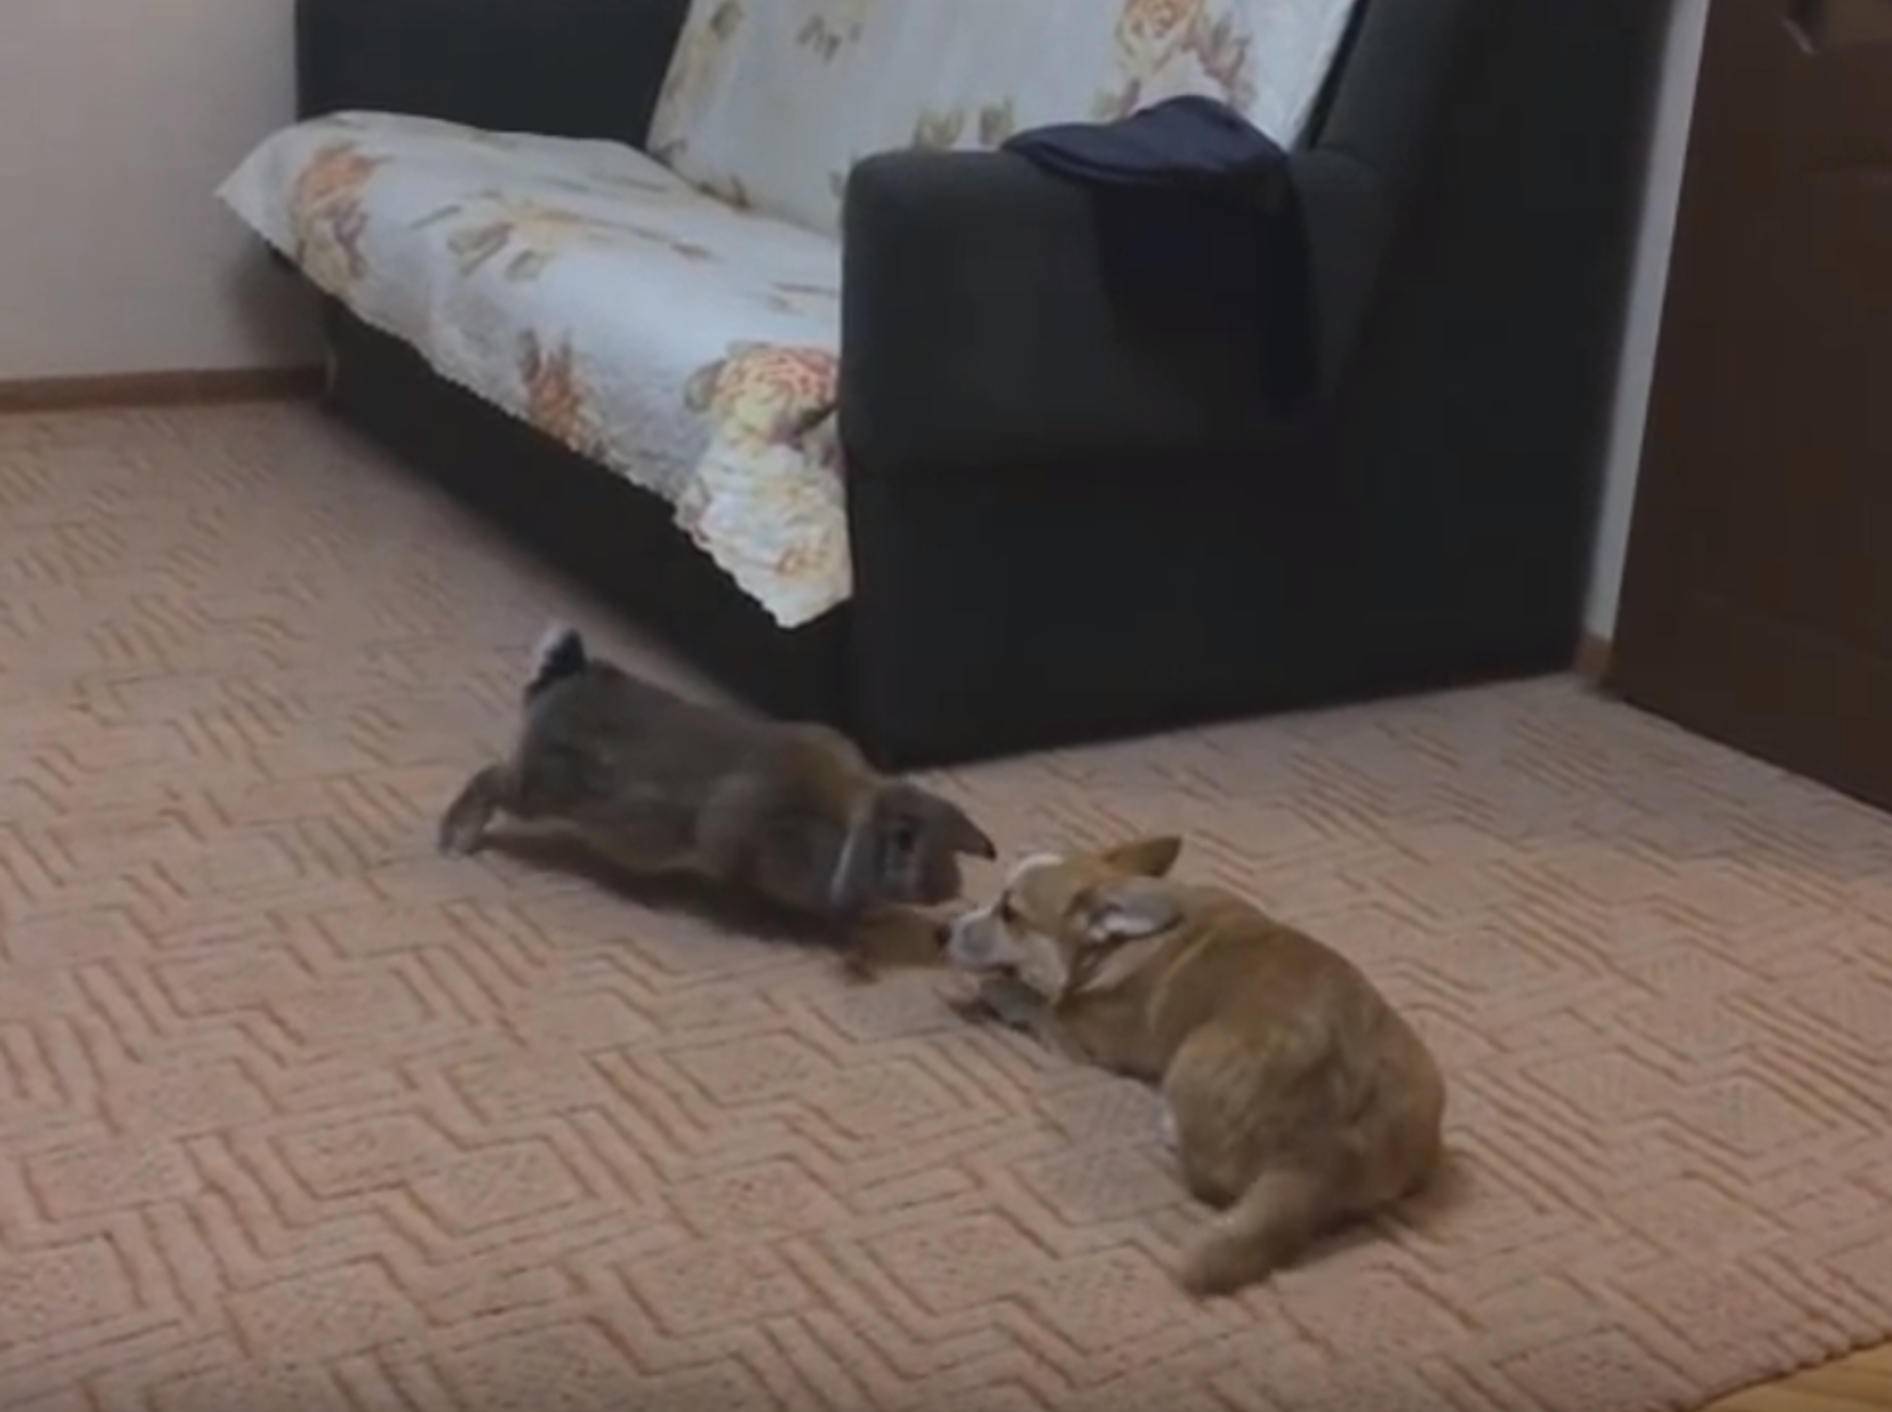 Corgi und Kaninchen: "Wollen wir Freunde sein?" – Bild: YouTube / winguner